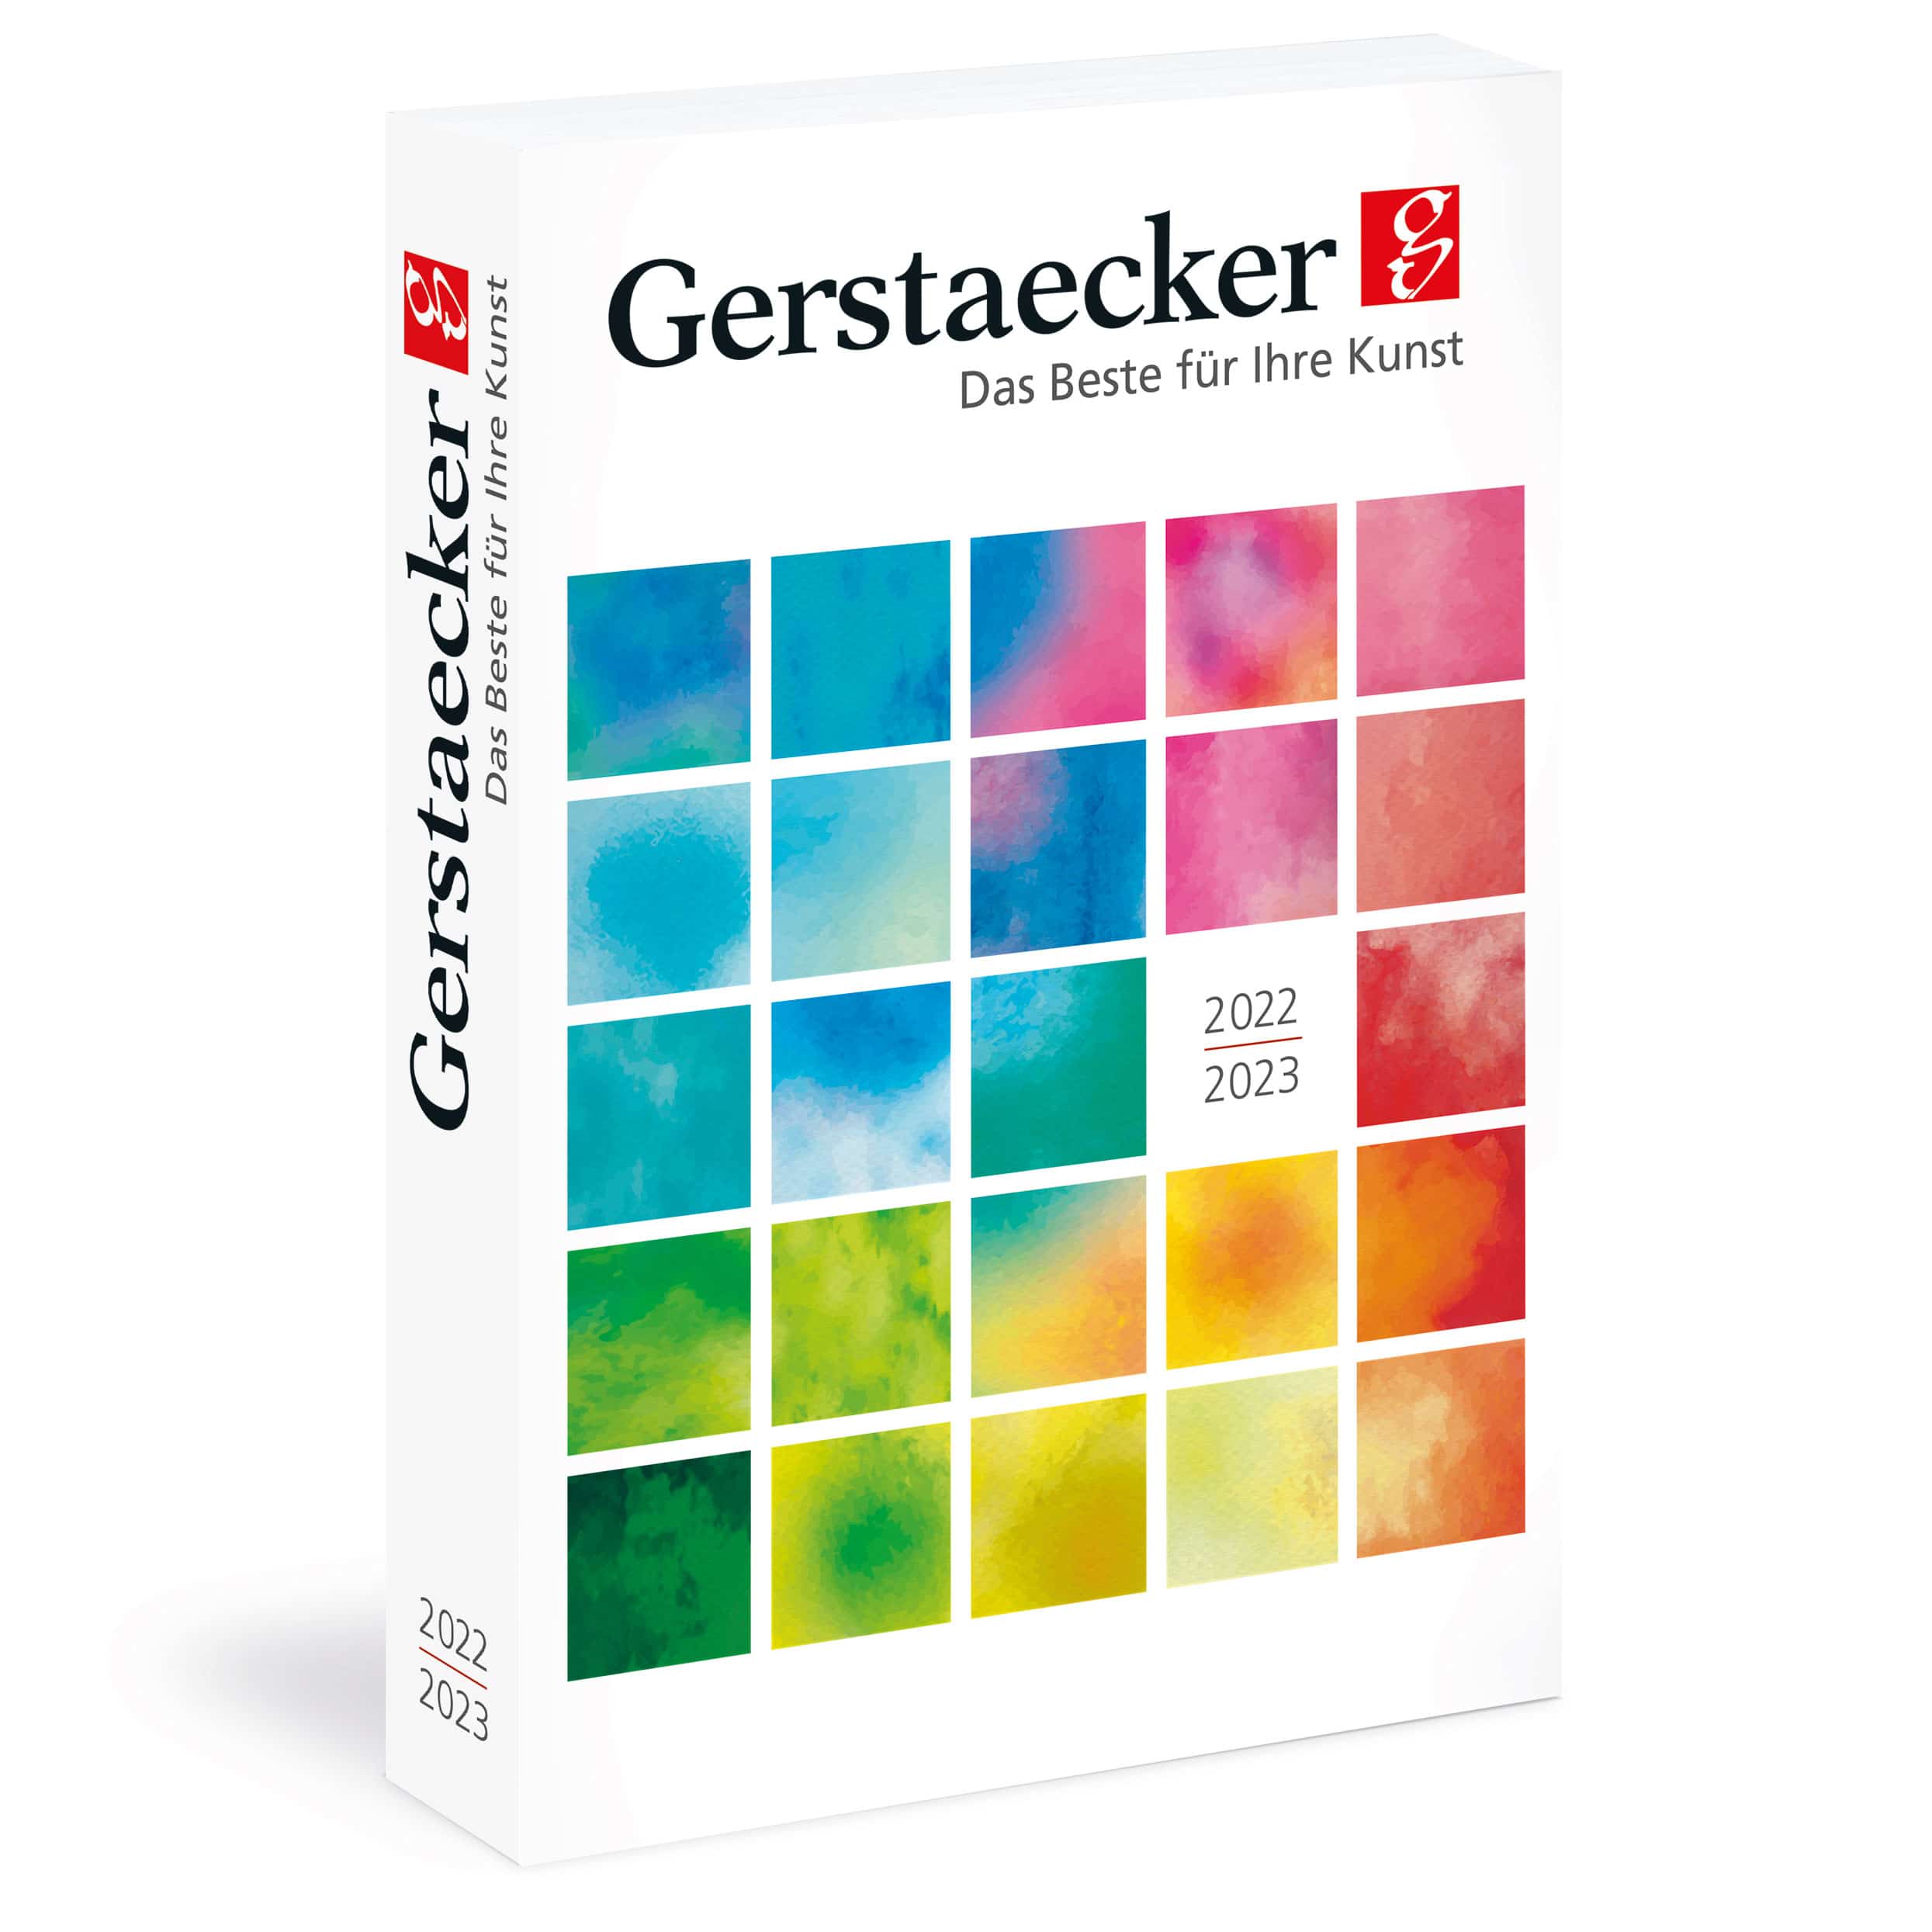 Gerstaecker Katalog - jetzt bestellen!